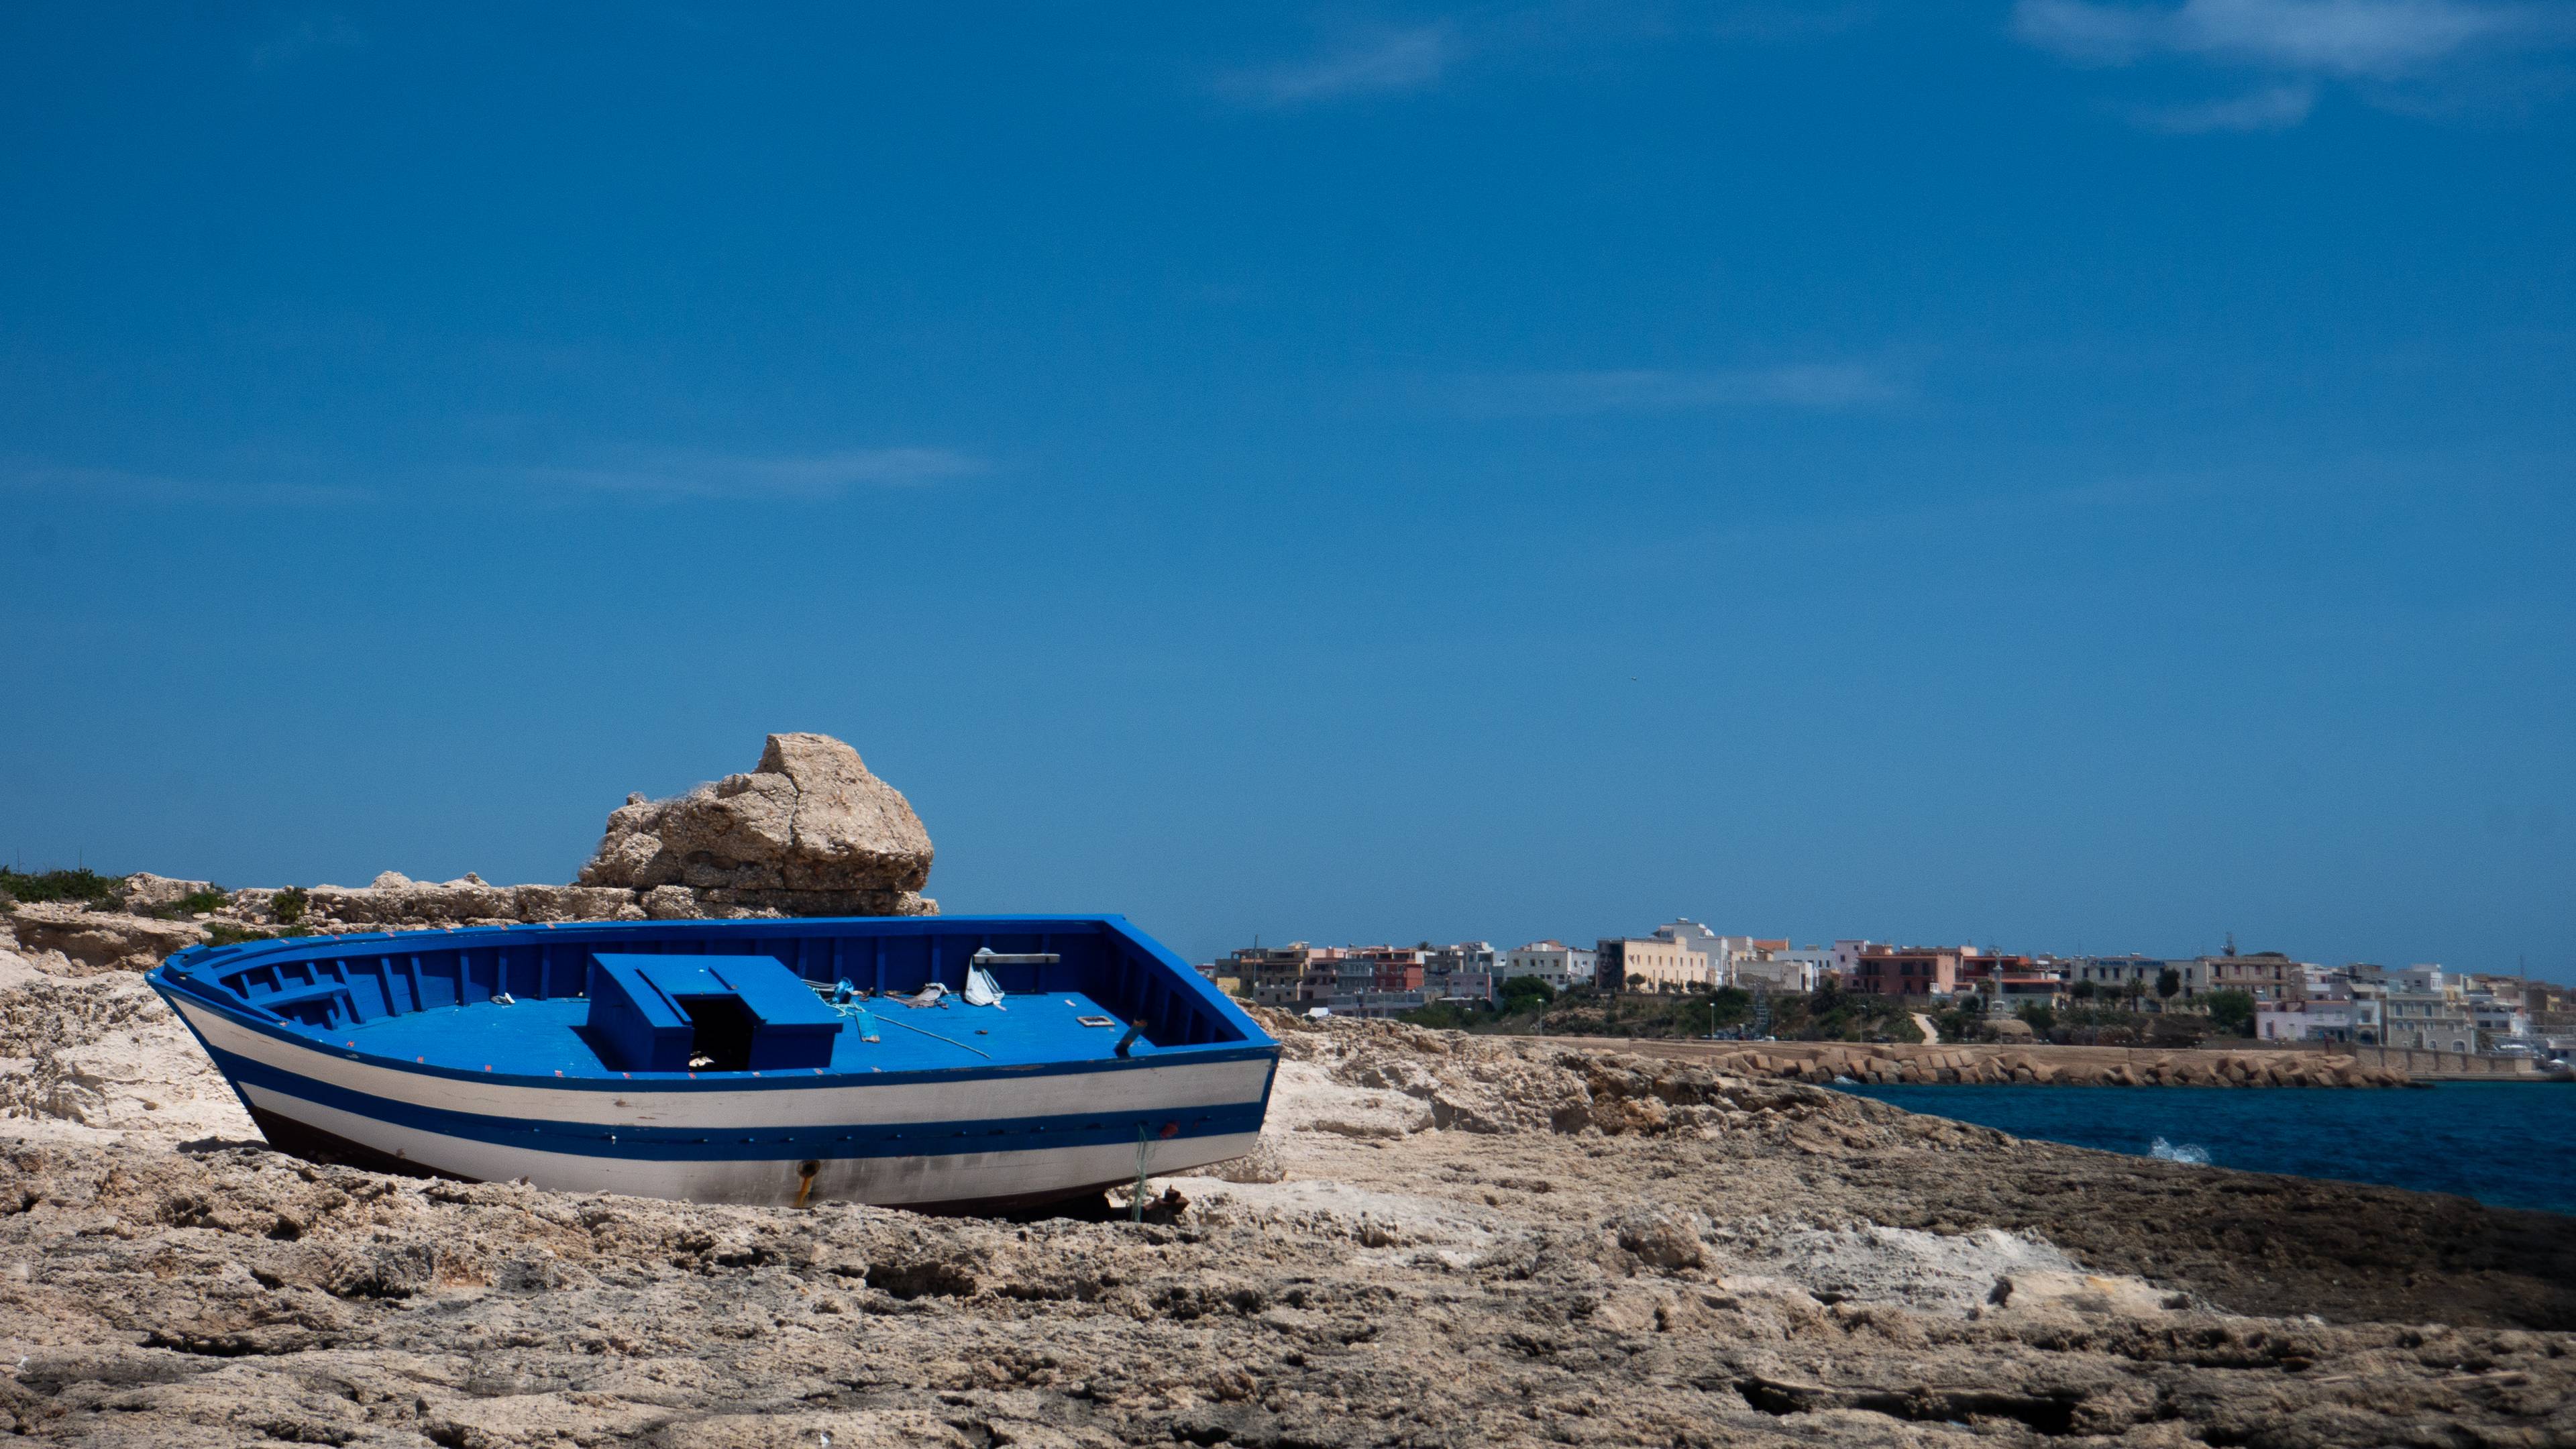 Łódź pomalowana na biało i niebiesko, leżąca na skałach na wyspie.